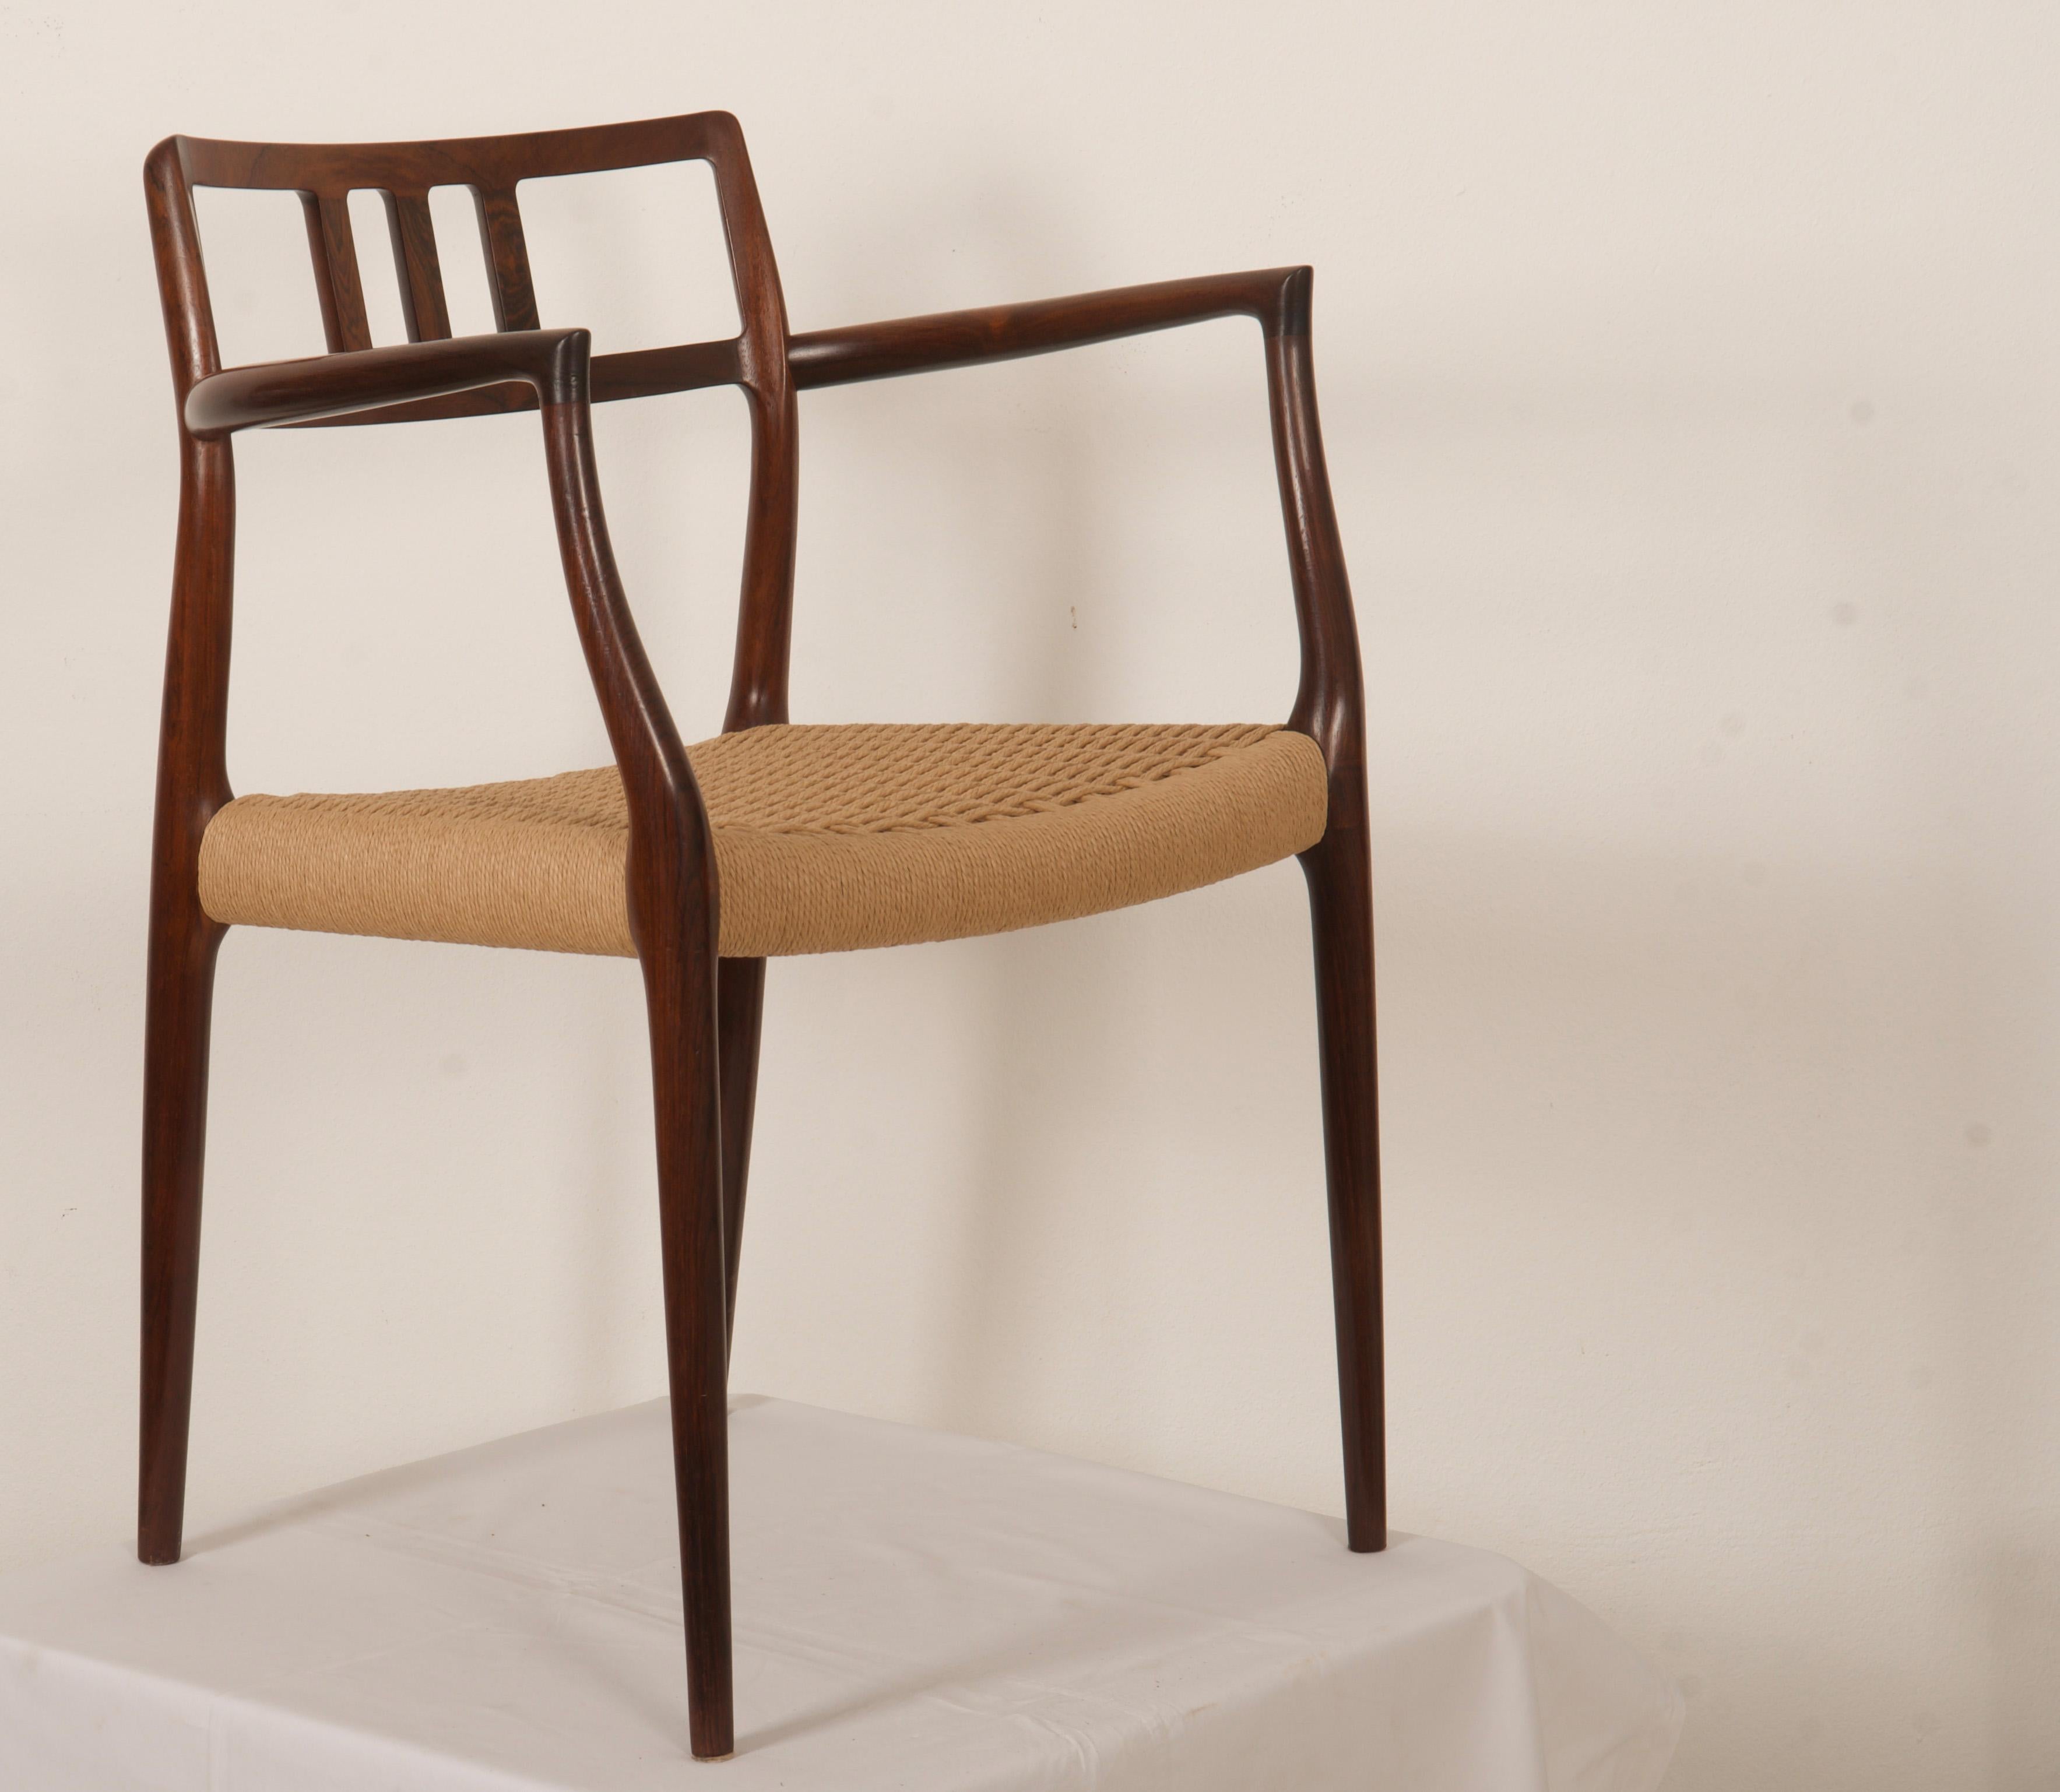 Massiver Hartholzrahmen, Sessel Modell 64, entworfen 1966 von Niels Moller für seine eigene Werkstatt: J.L. Moller Mobelfabrik in Dänemark. Die Sitze wurden neu aus dänischem Papierkord gewebt.
Gebraucht, aber immer noch in einem perfekten